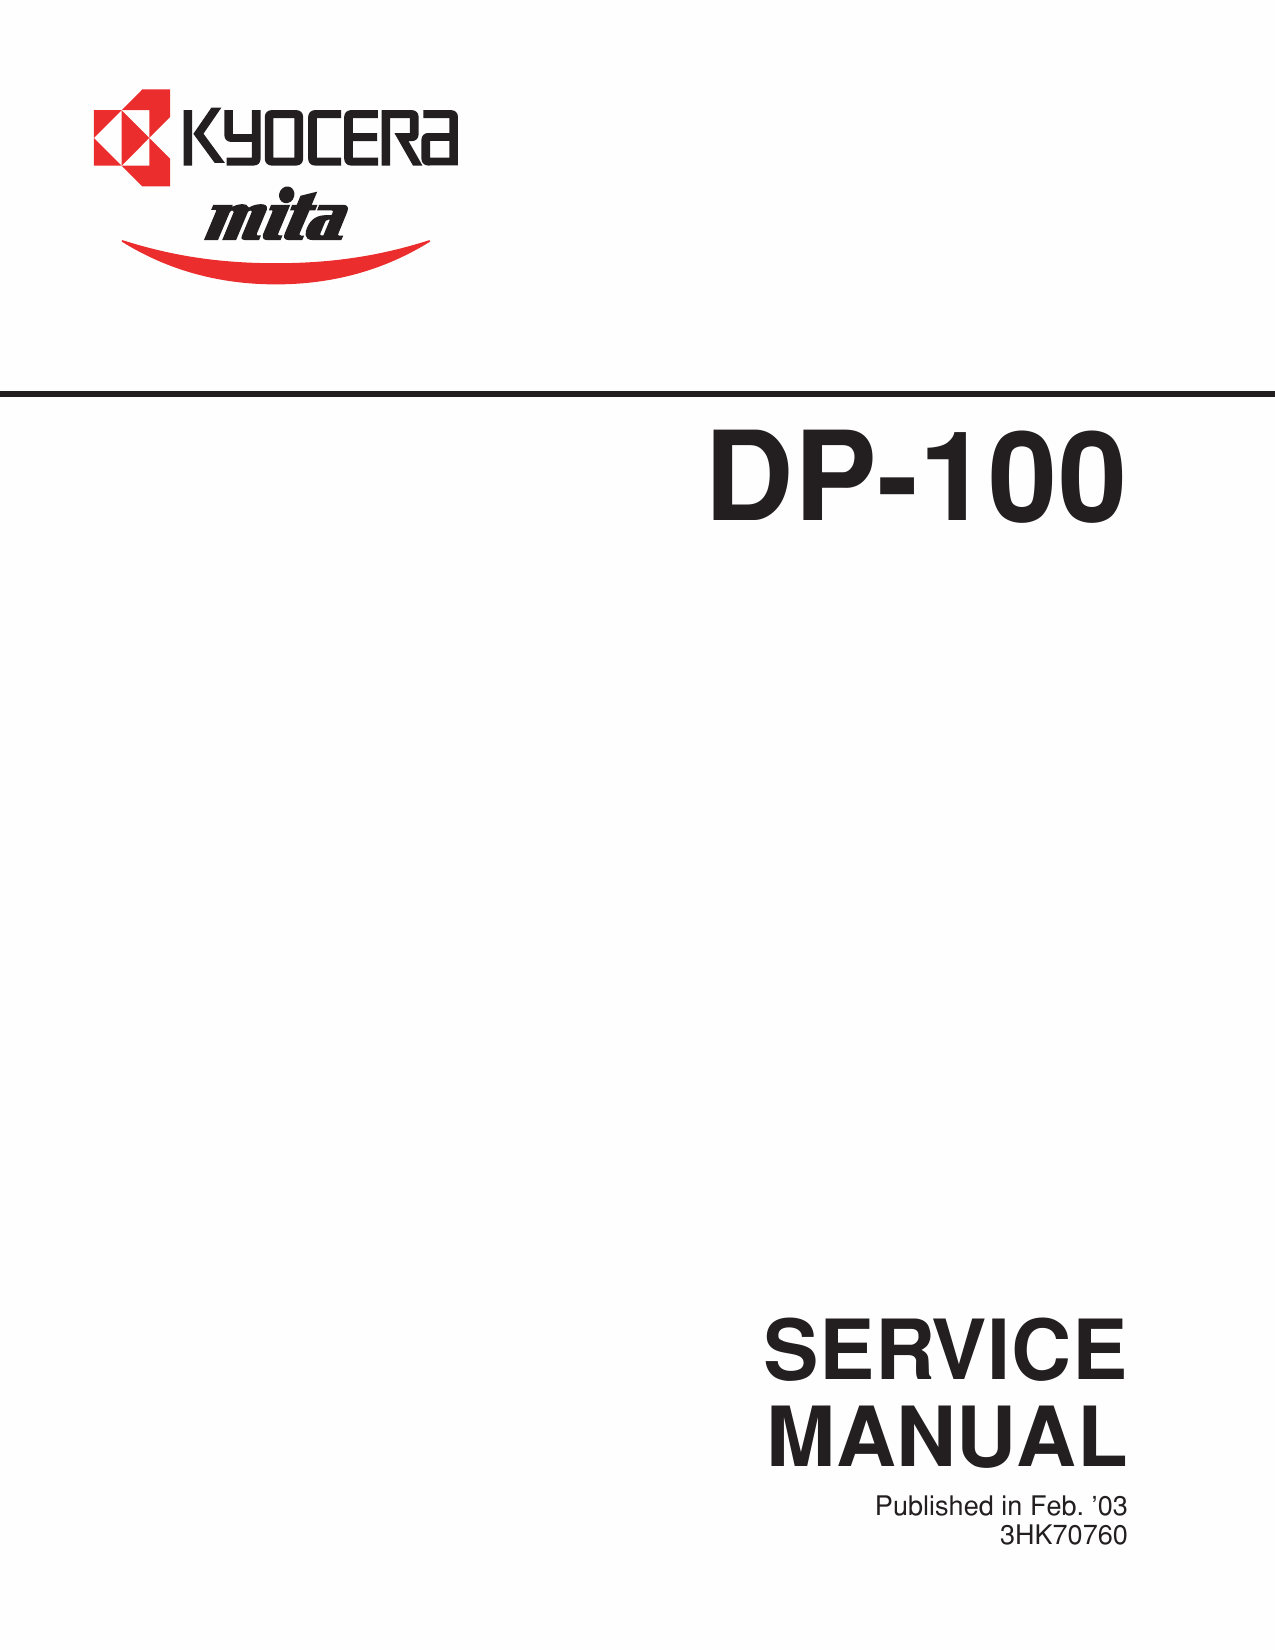 KYOCERA Options DP-100 Parts and Service Manual-1